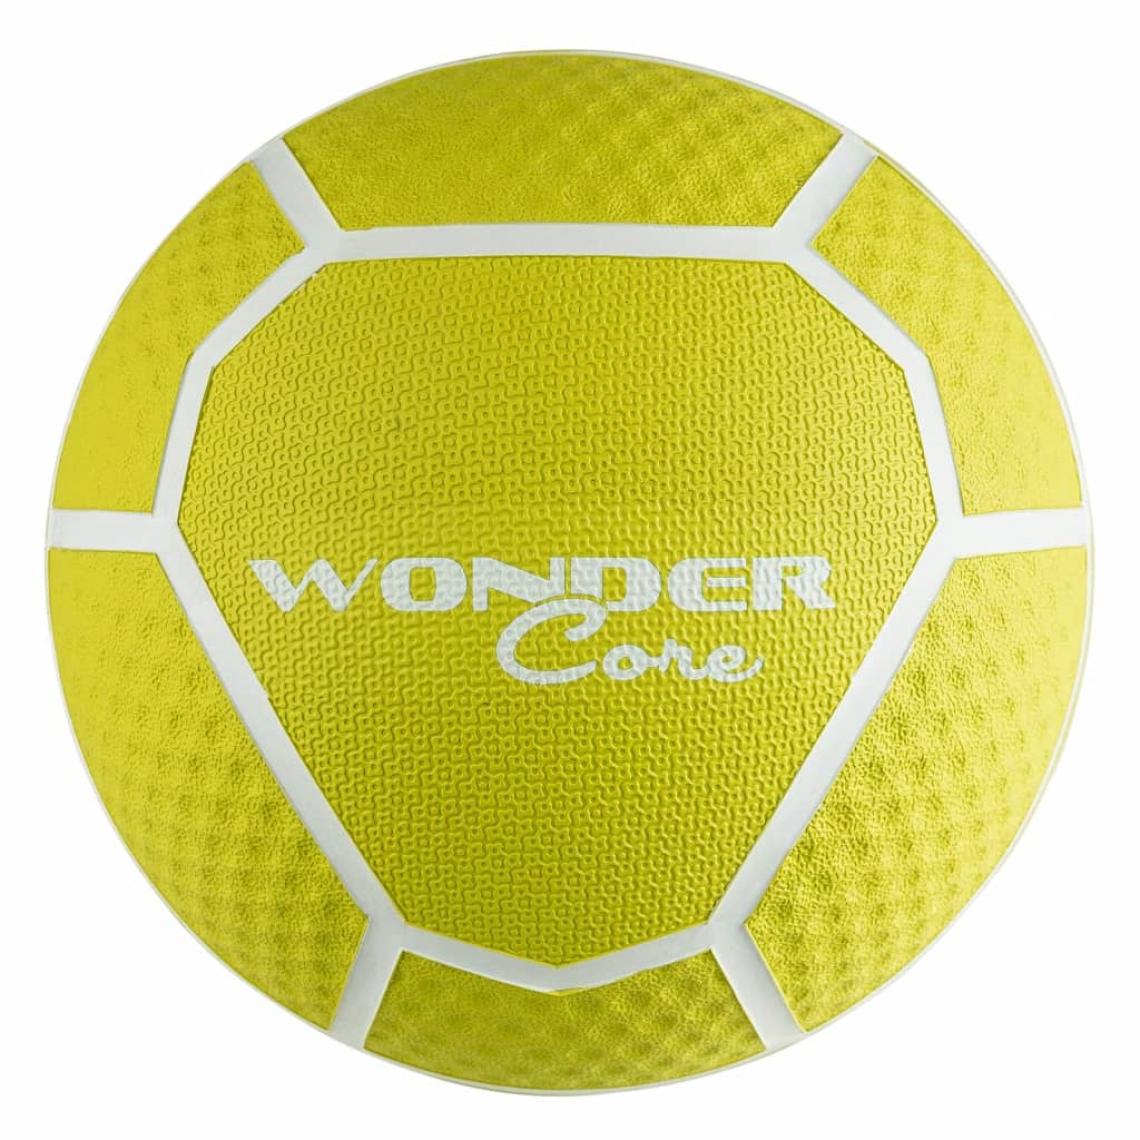 Wonder Core - Wonder Core Ballon médicinal 5 kg Jaune - Jeux de balles